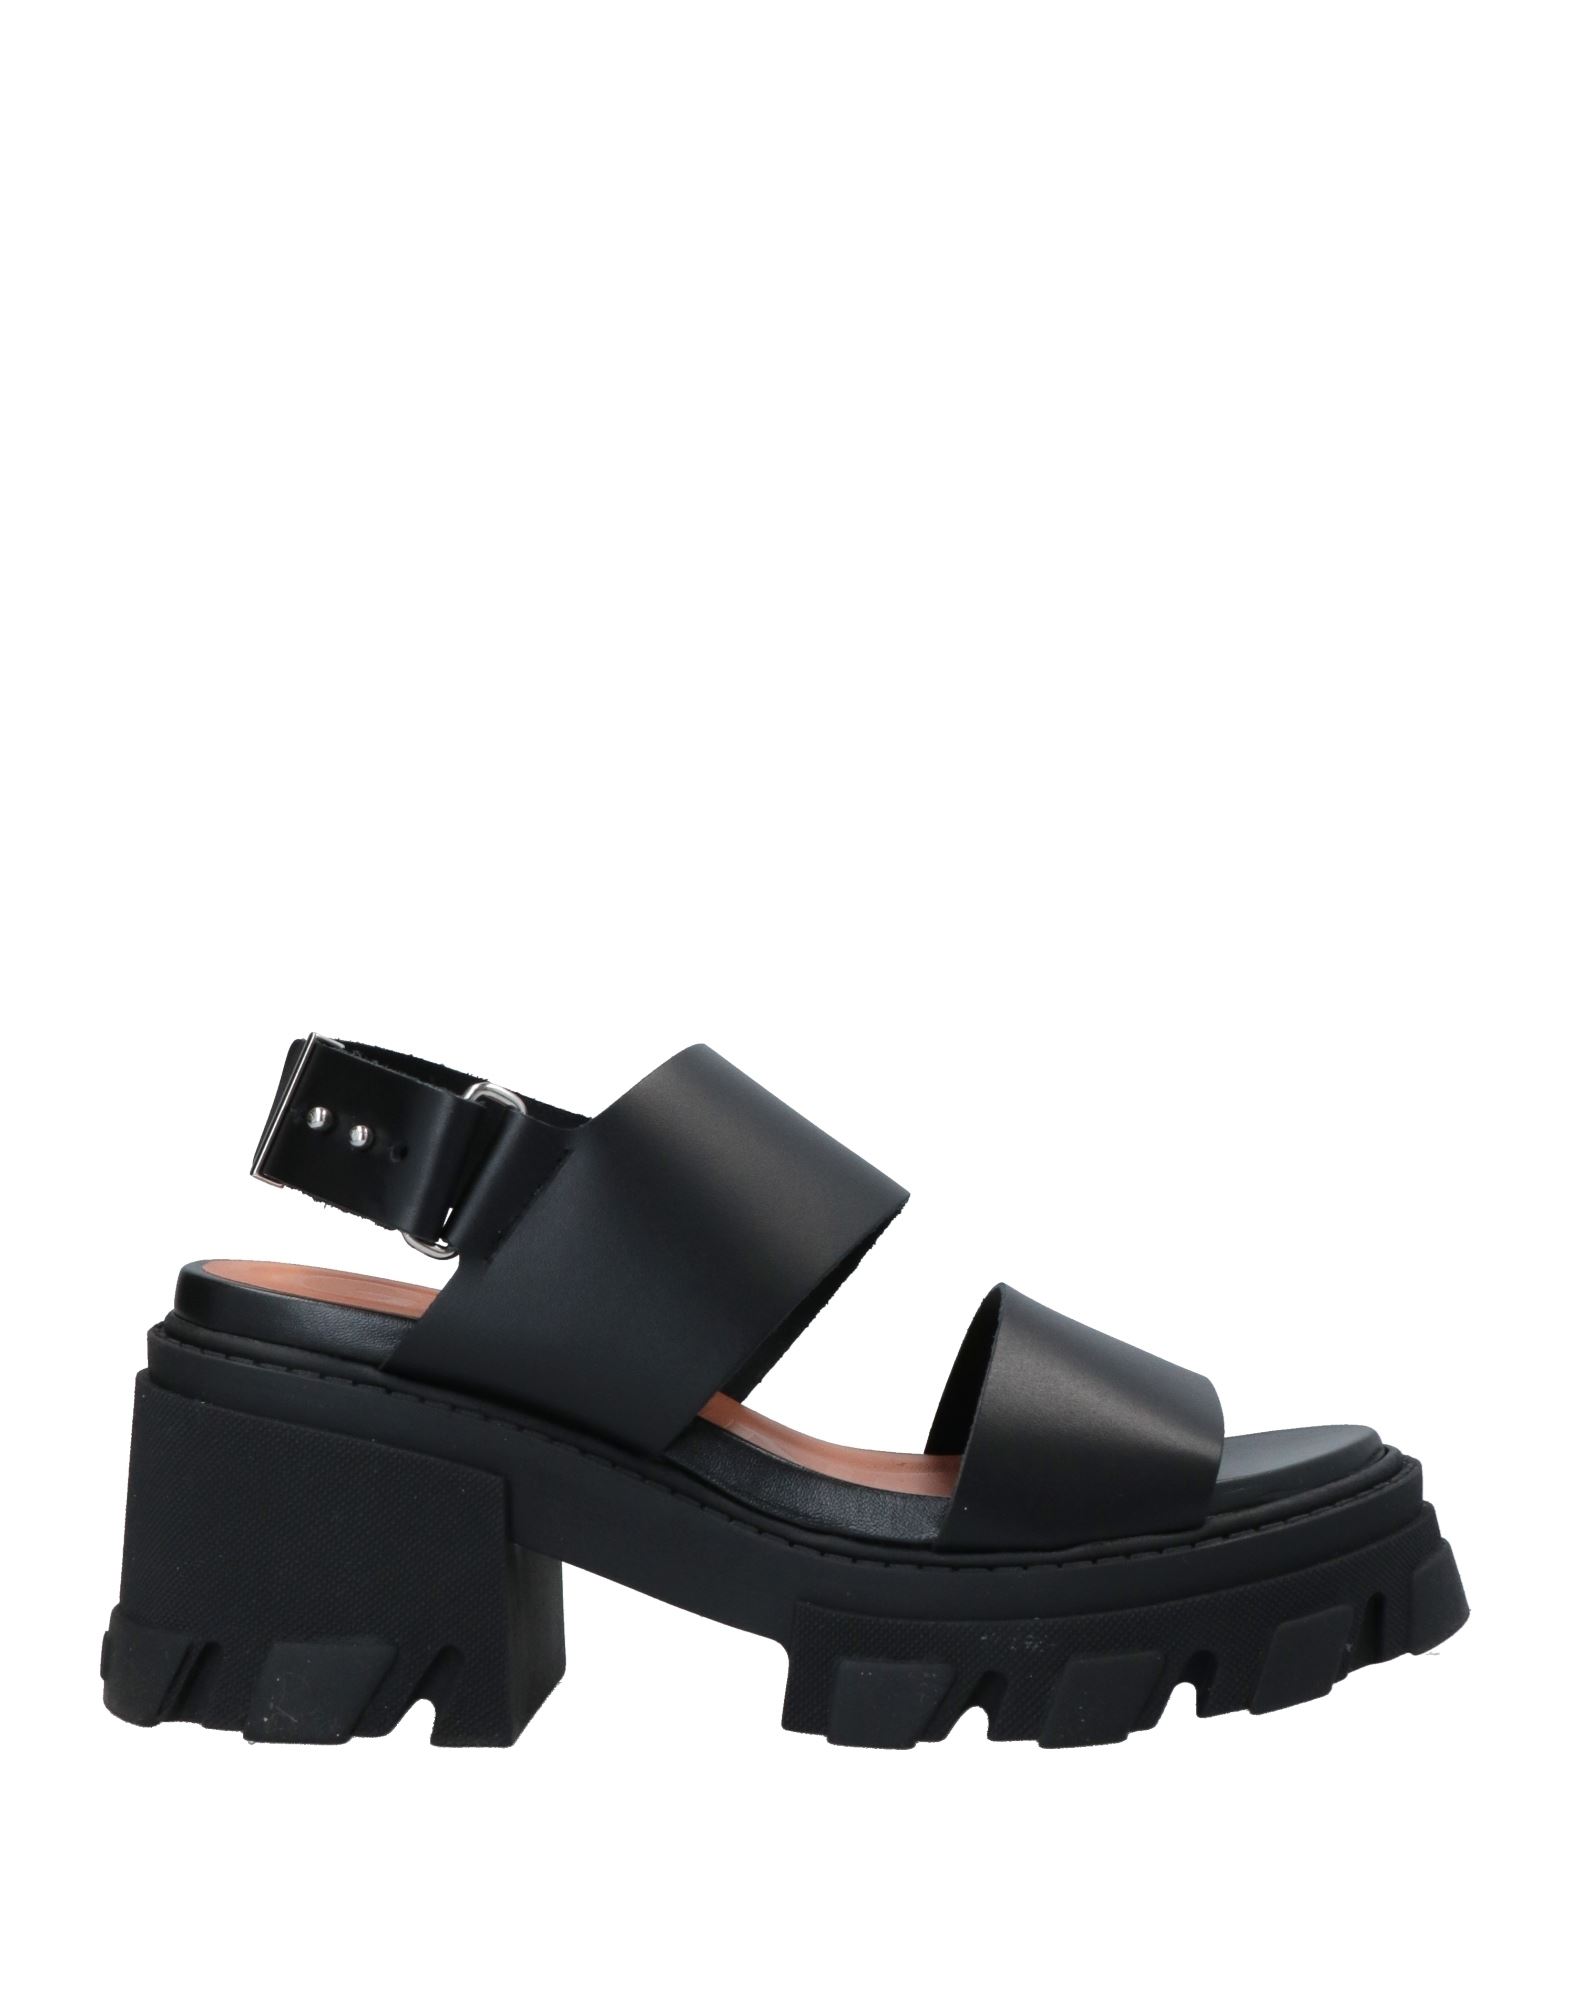 Shop Ganni Woman Sandals Black Size 8 Soft Leather